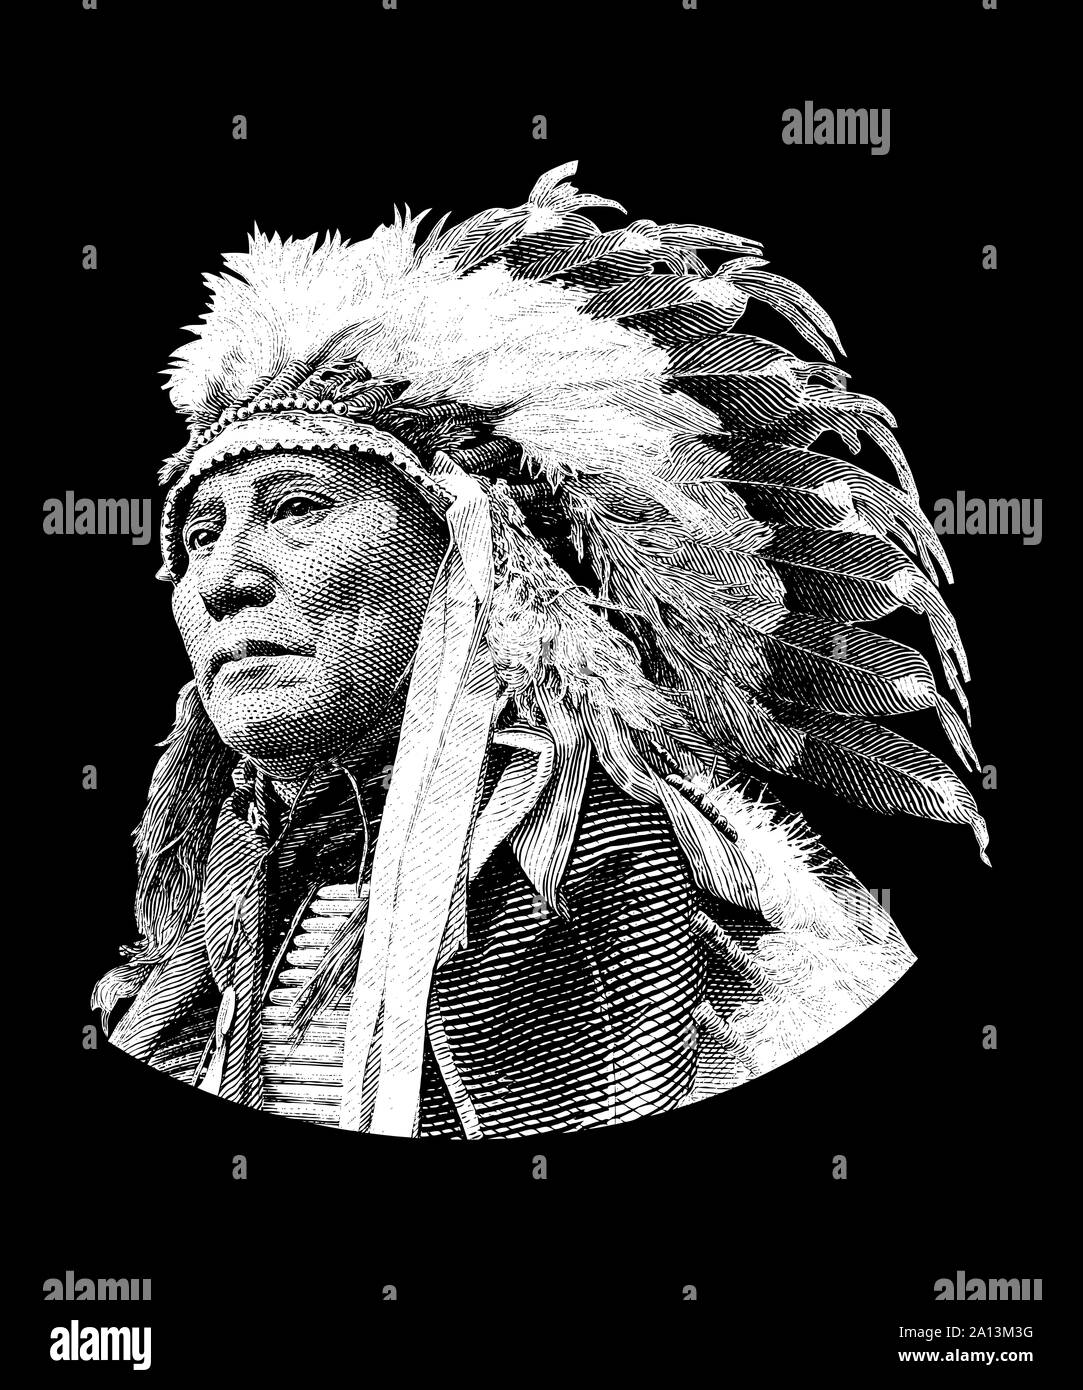 Historia Americana Nativa de jefe de diseño Hollow Horn Bear, Brule líder Lakota. Foto de stock